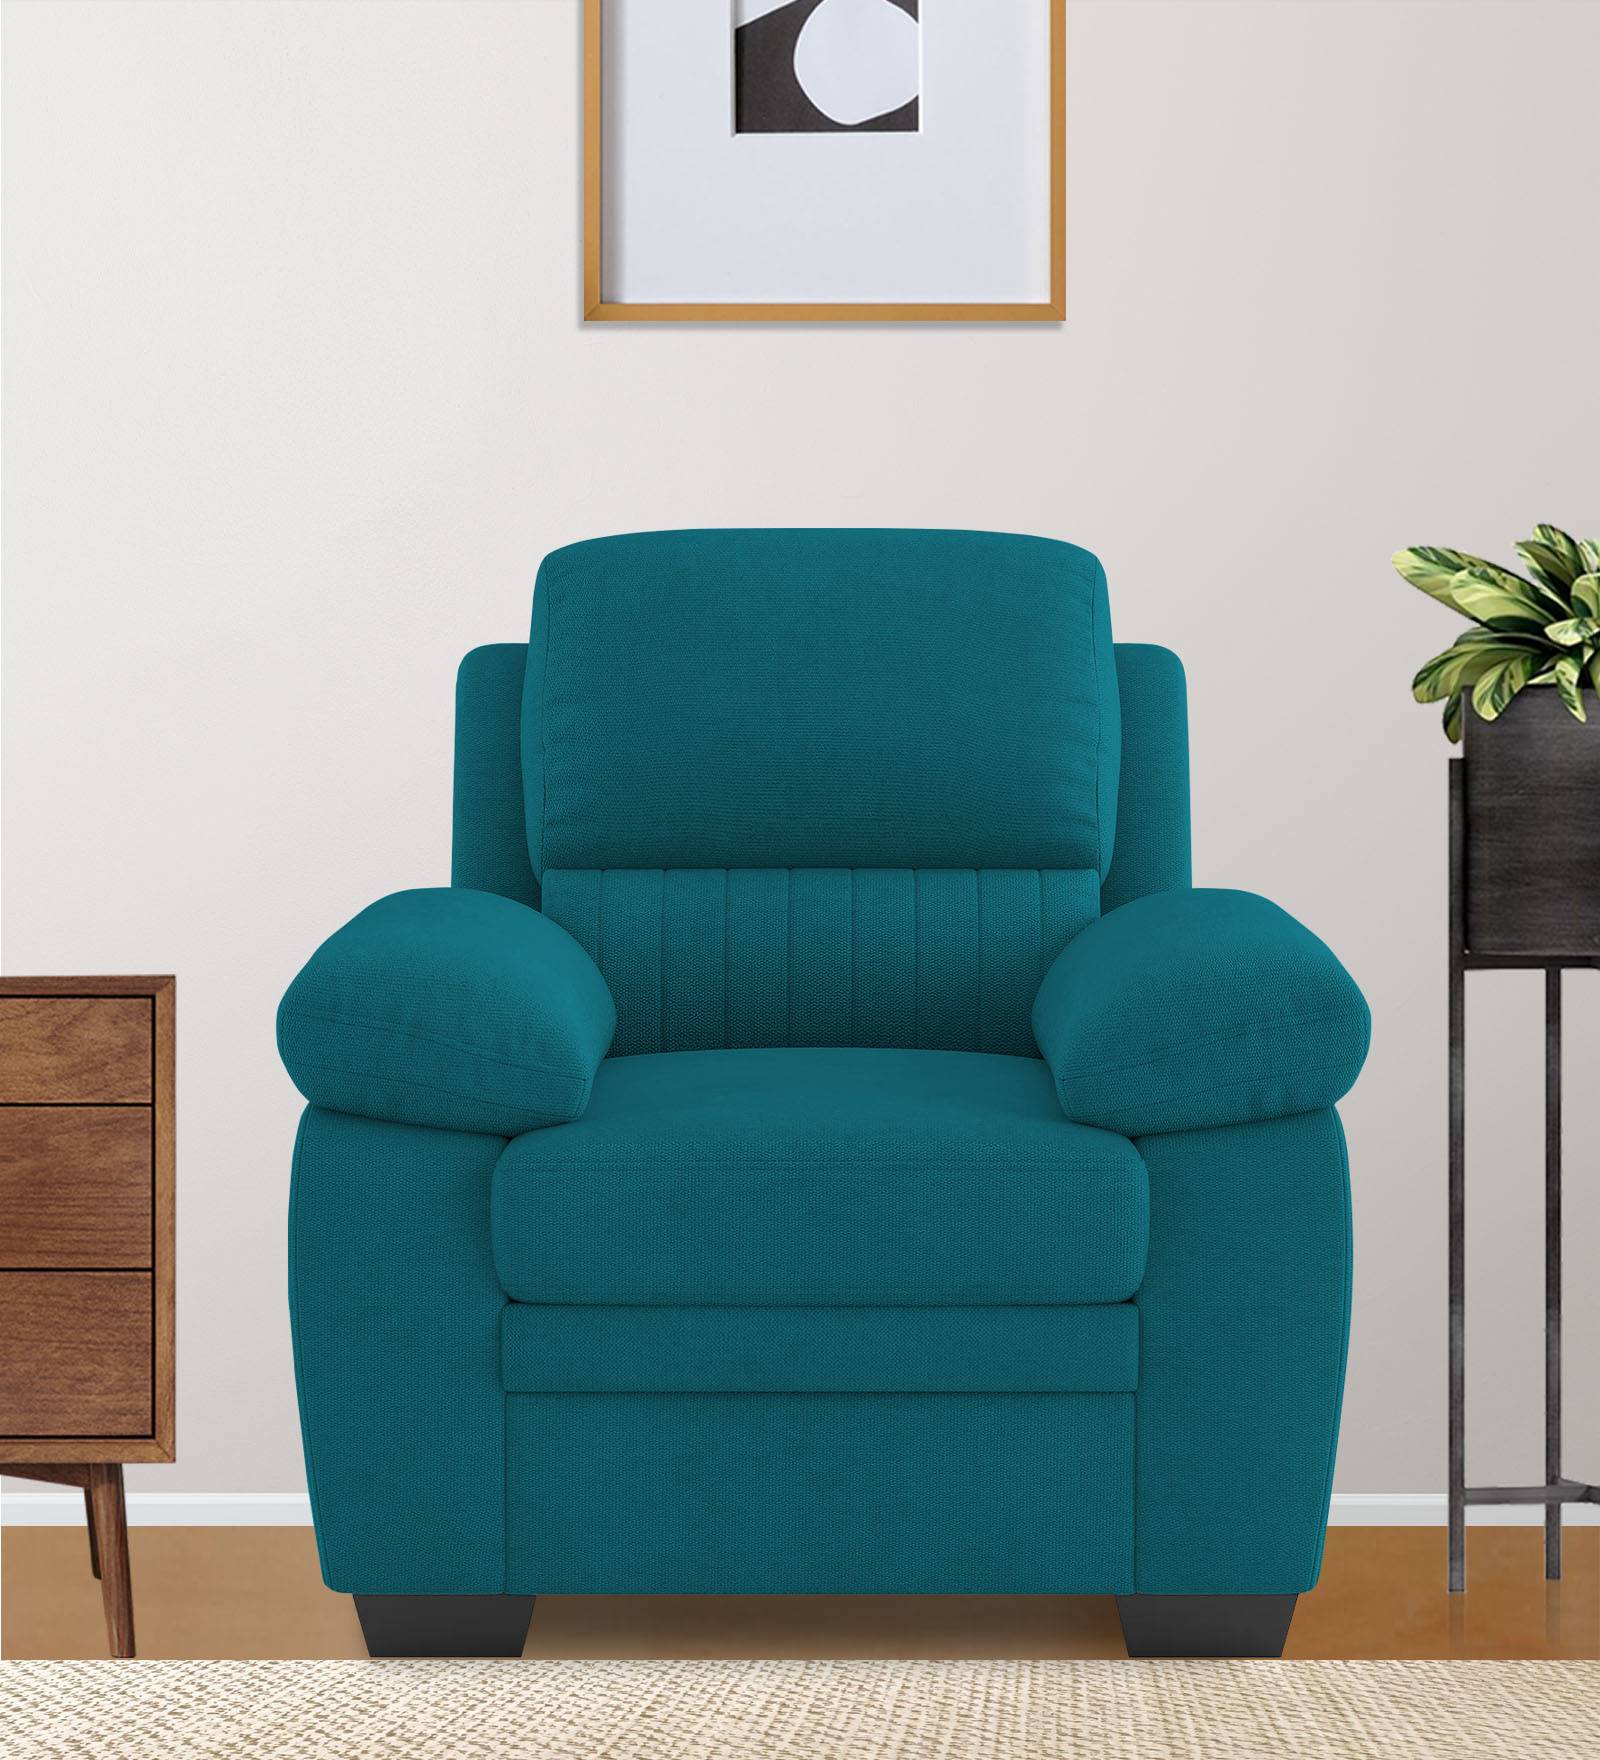 Miranda Velvet 1 Seater Sofa in Pine green Colour